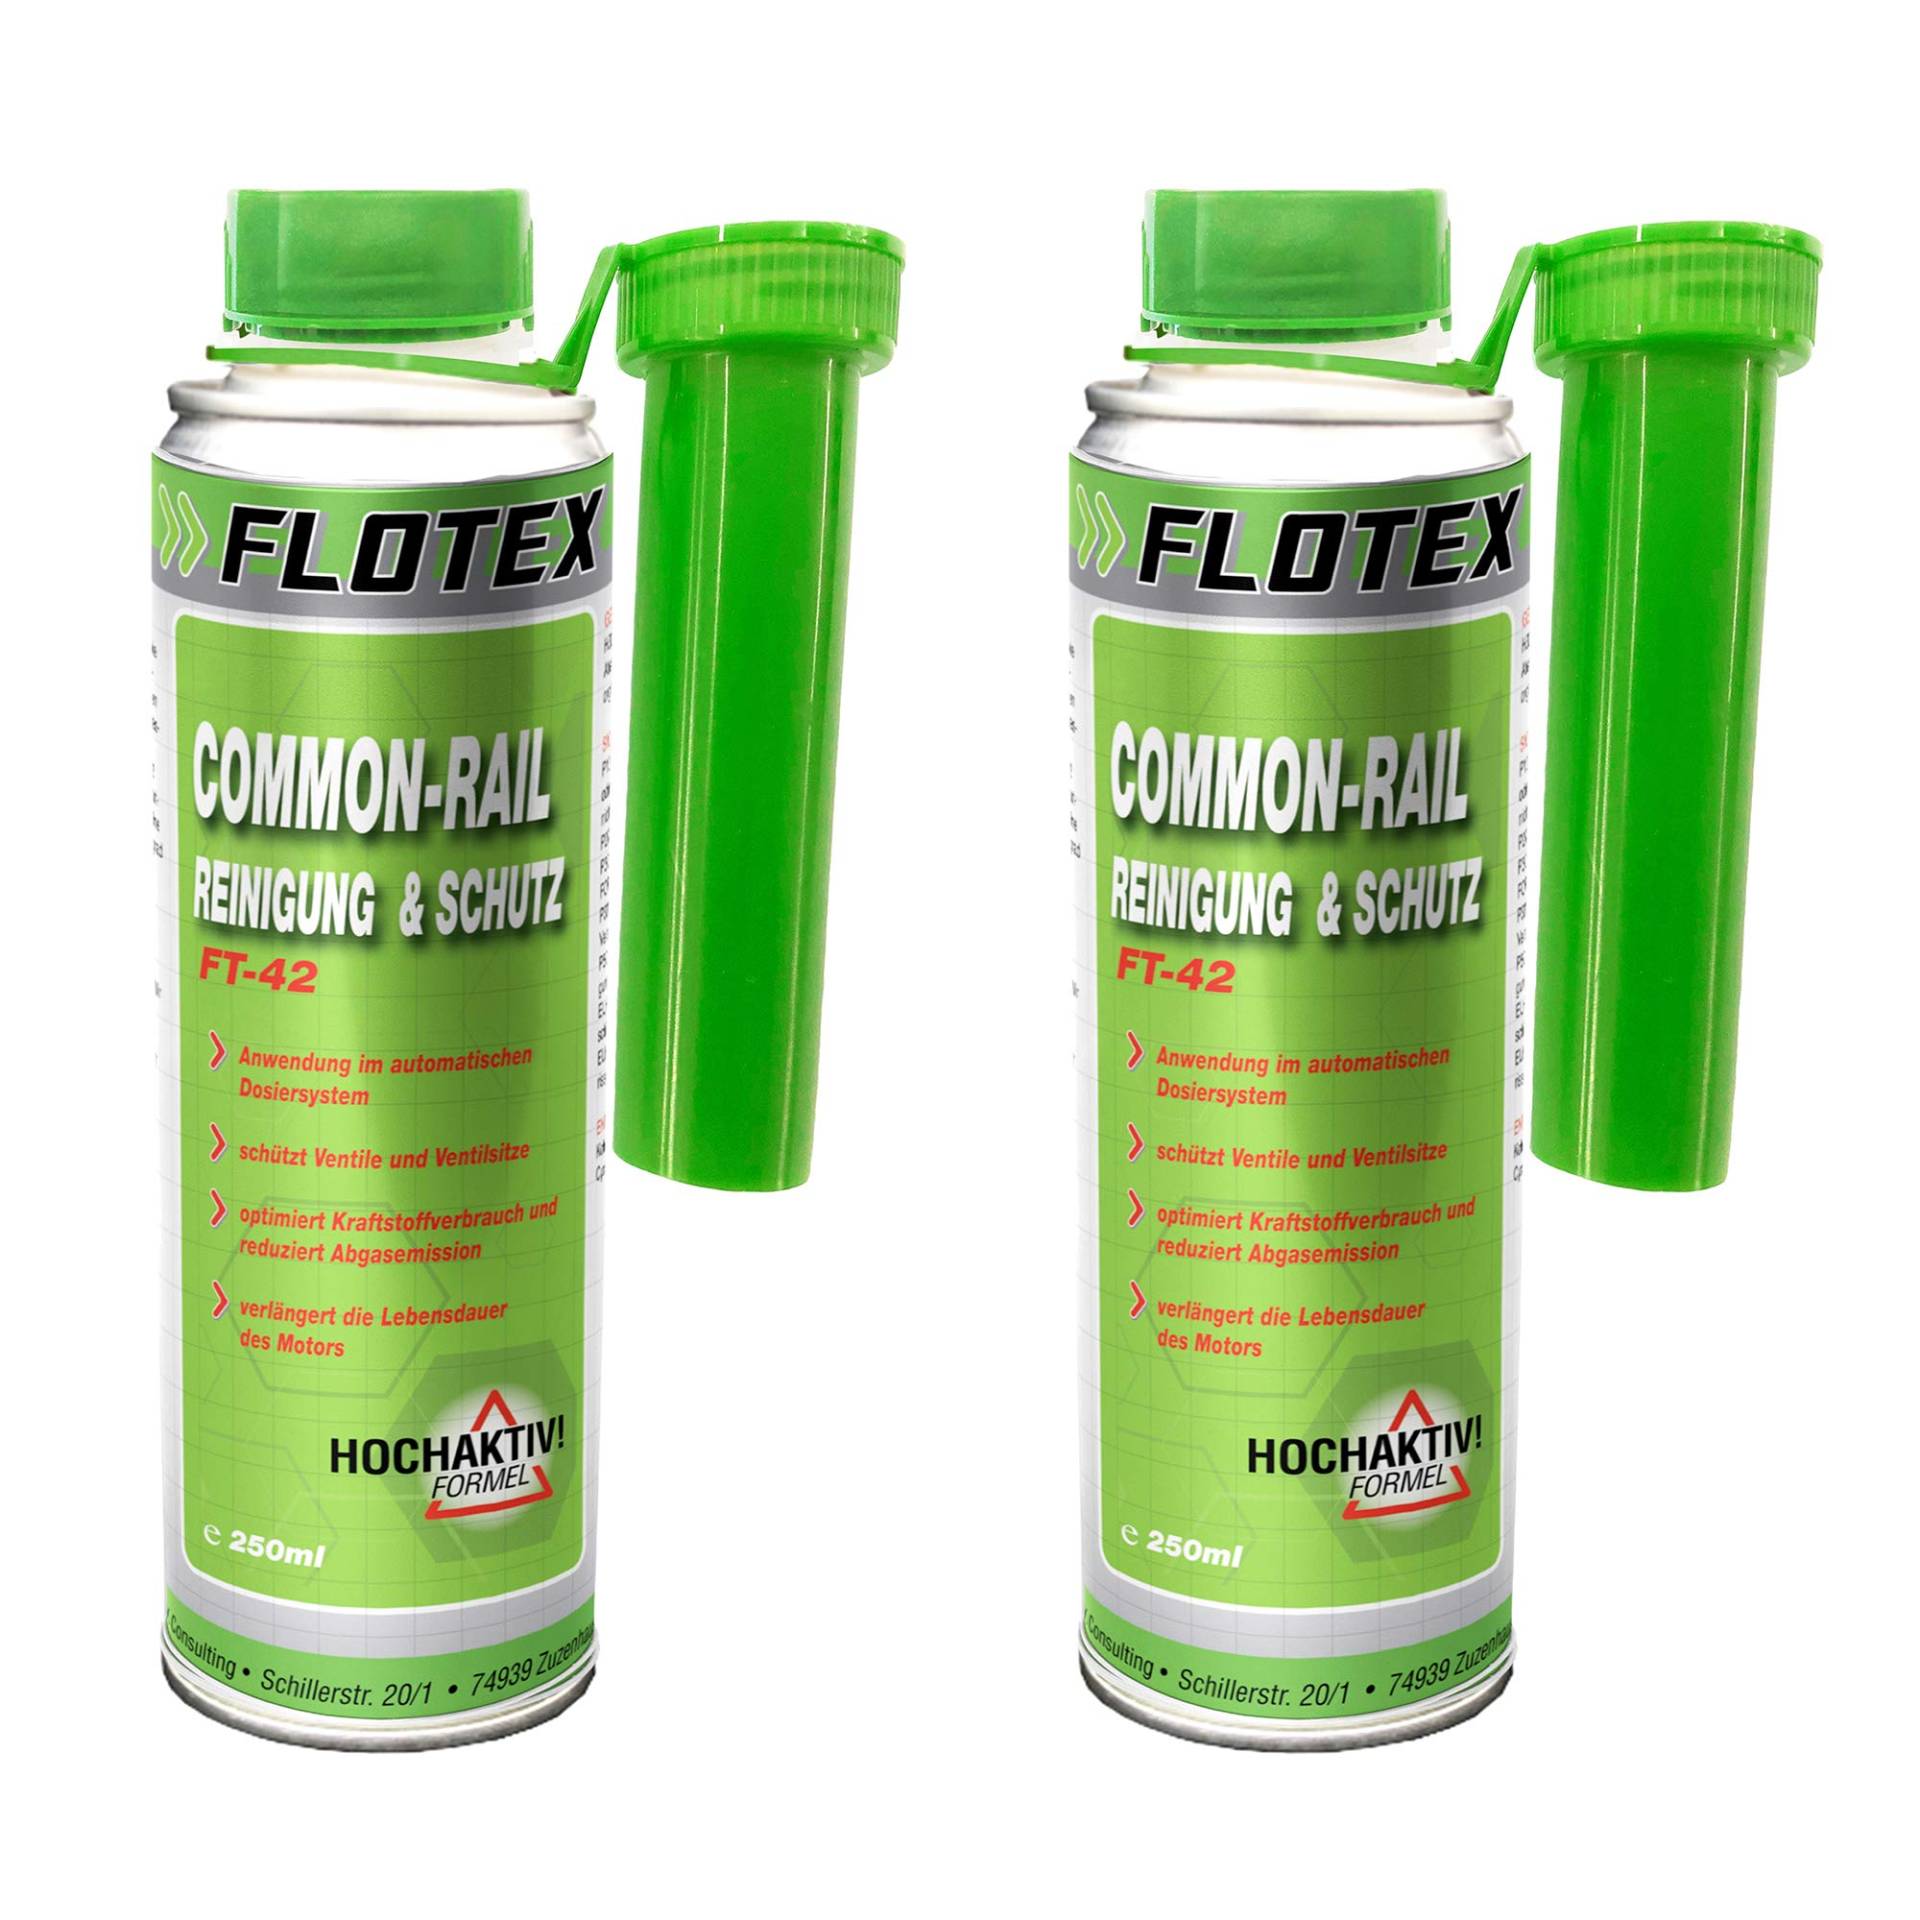 Flotex® - Winterschutz für Diesel